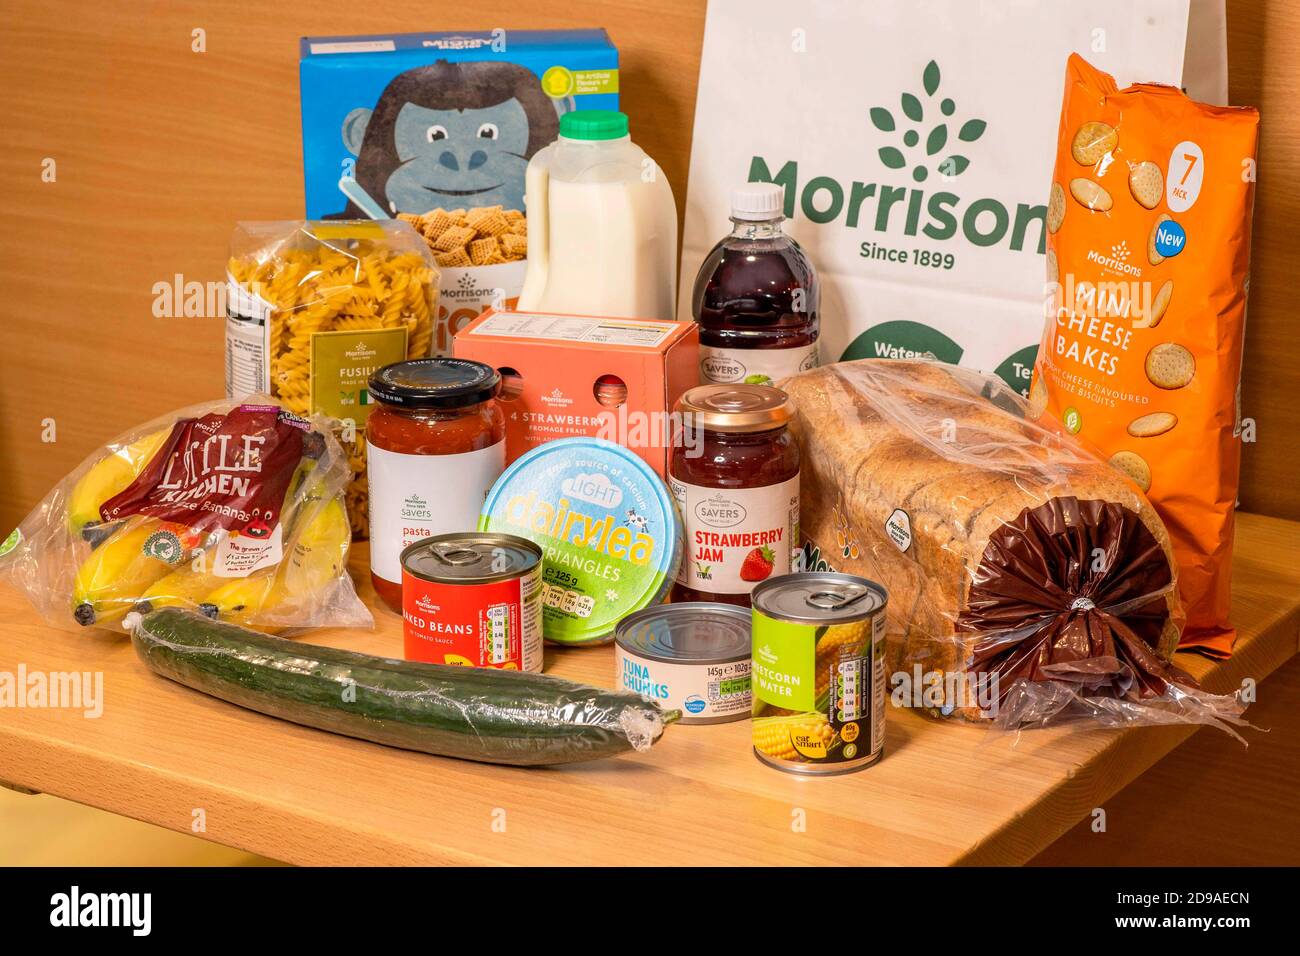 REDAKTIONELLE VERWENDUNG NUR EINE allgemeine Ansicht der Morrisons-Produkte, die in den kostenlosen Lebensmittelpaketen des Supermarkts gefunden werden, um selbstisolierende Schulkinder zu ernähren, die Anspruch auf kostenlose Schulmahlzeiten haben. Stockfoto